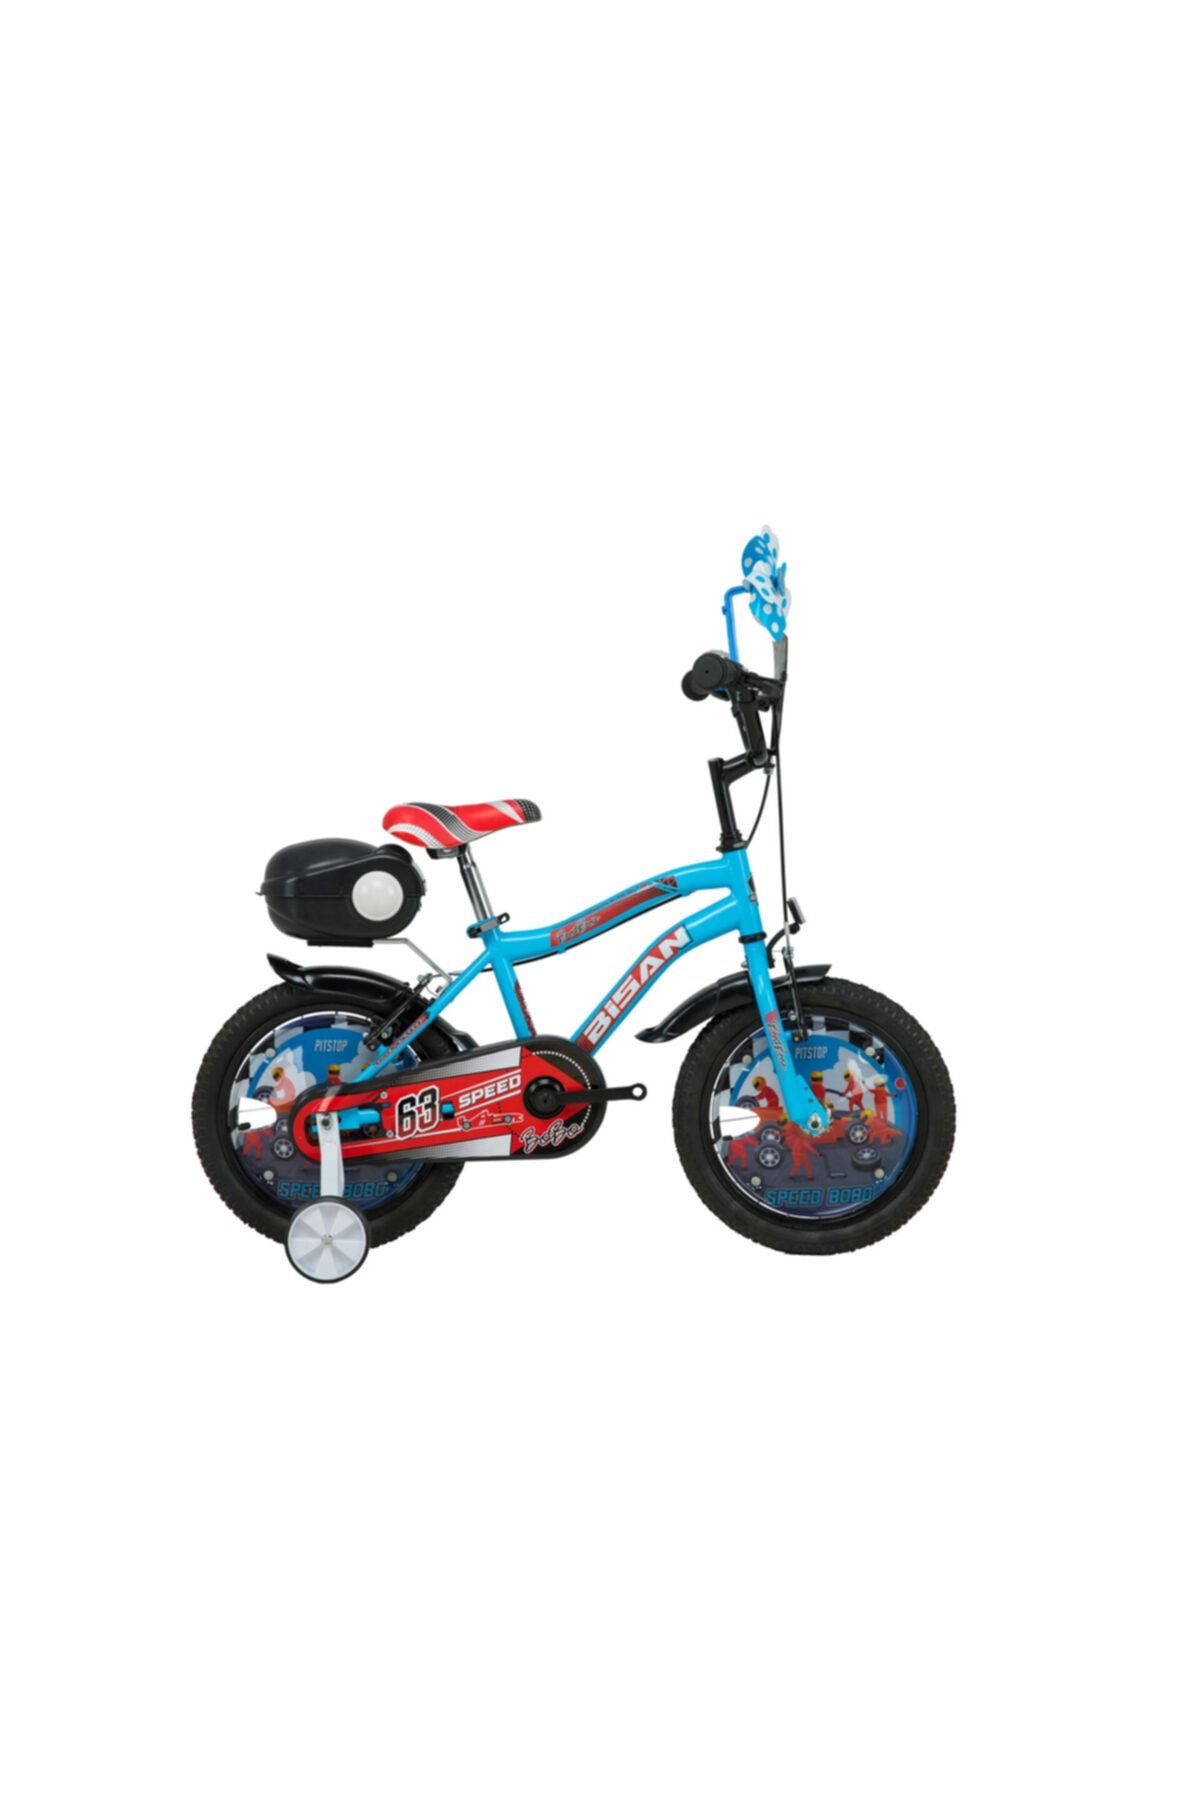 Bisan Kds 2200 Bobo 16 Jant Çocuk Bisikleti - Mavi